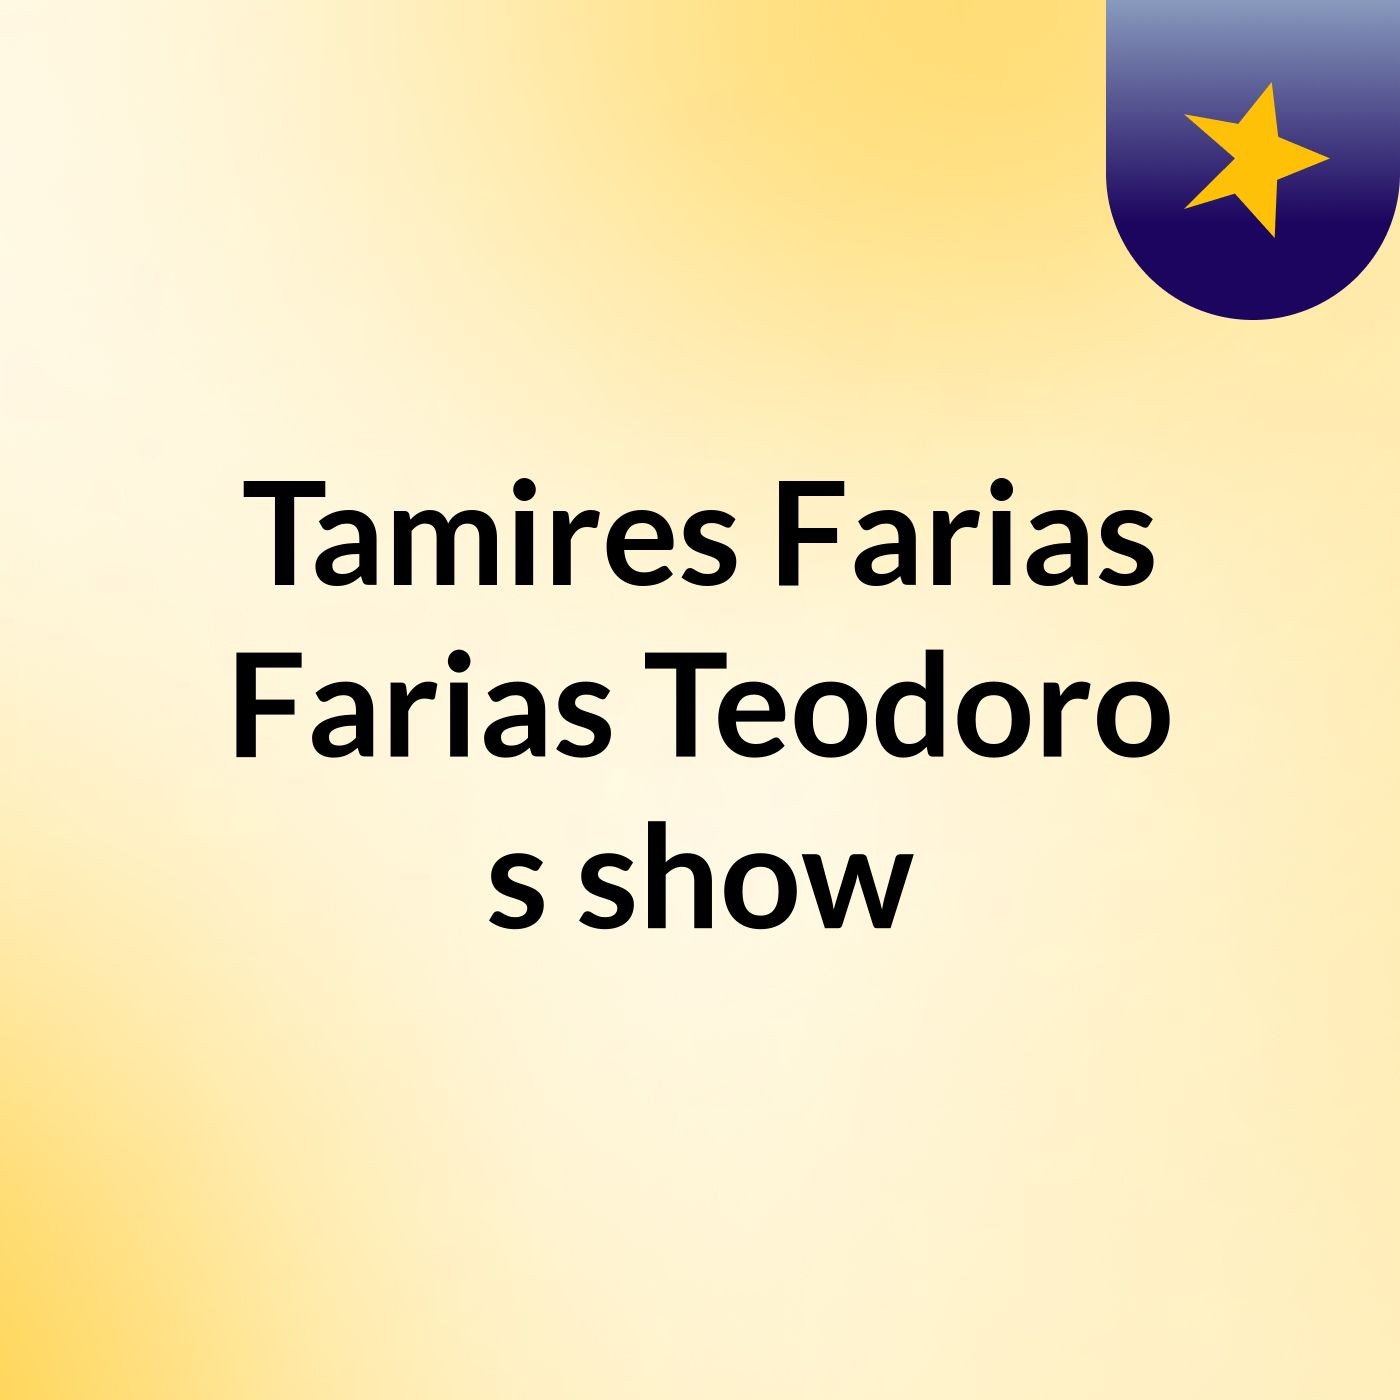 Tamires Farias Farias Teodoro 's show